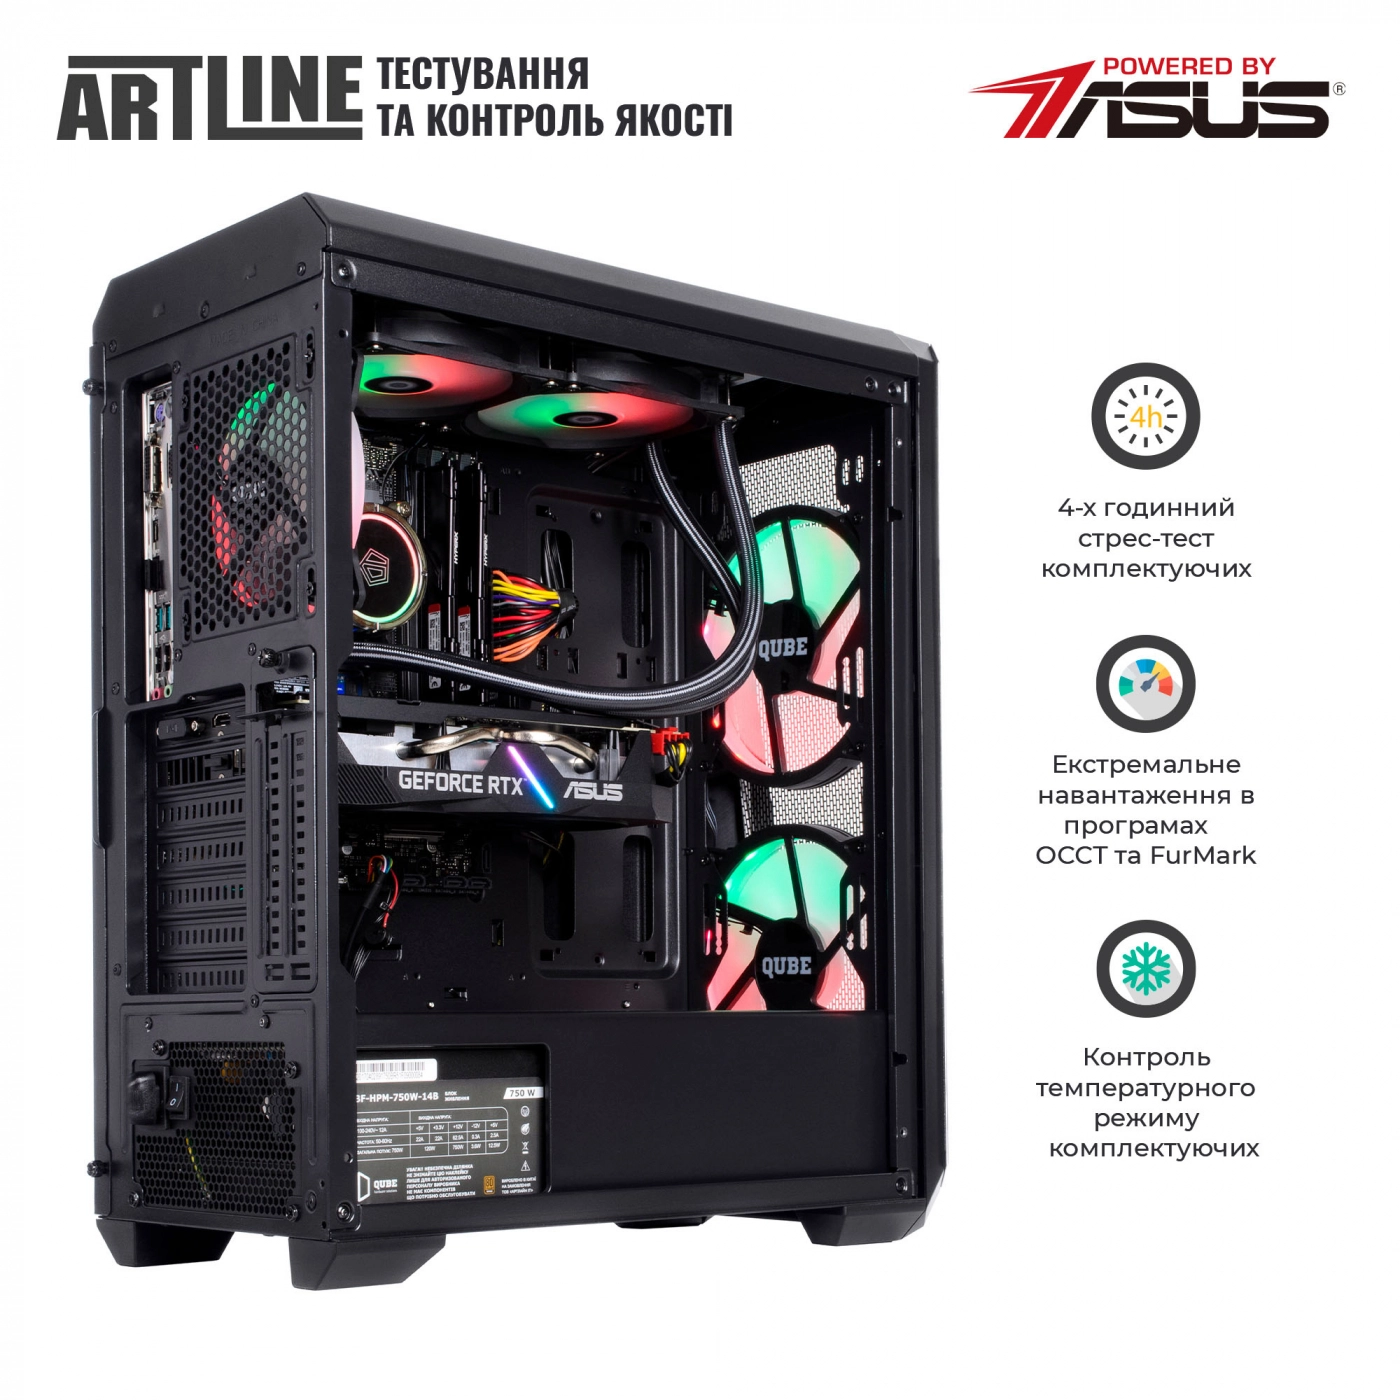 Купить Компьютер ARTLINE Gaming X88v09 - фото 8